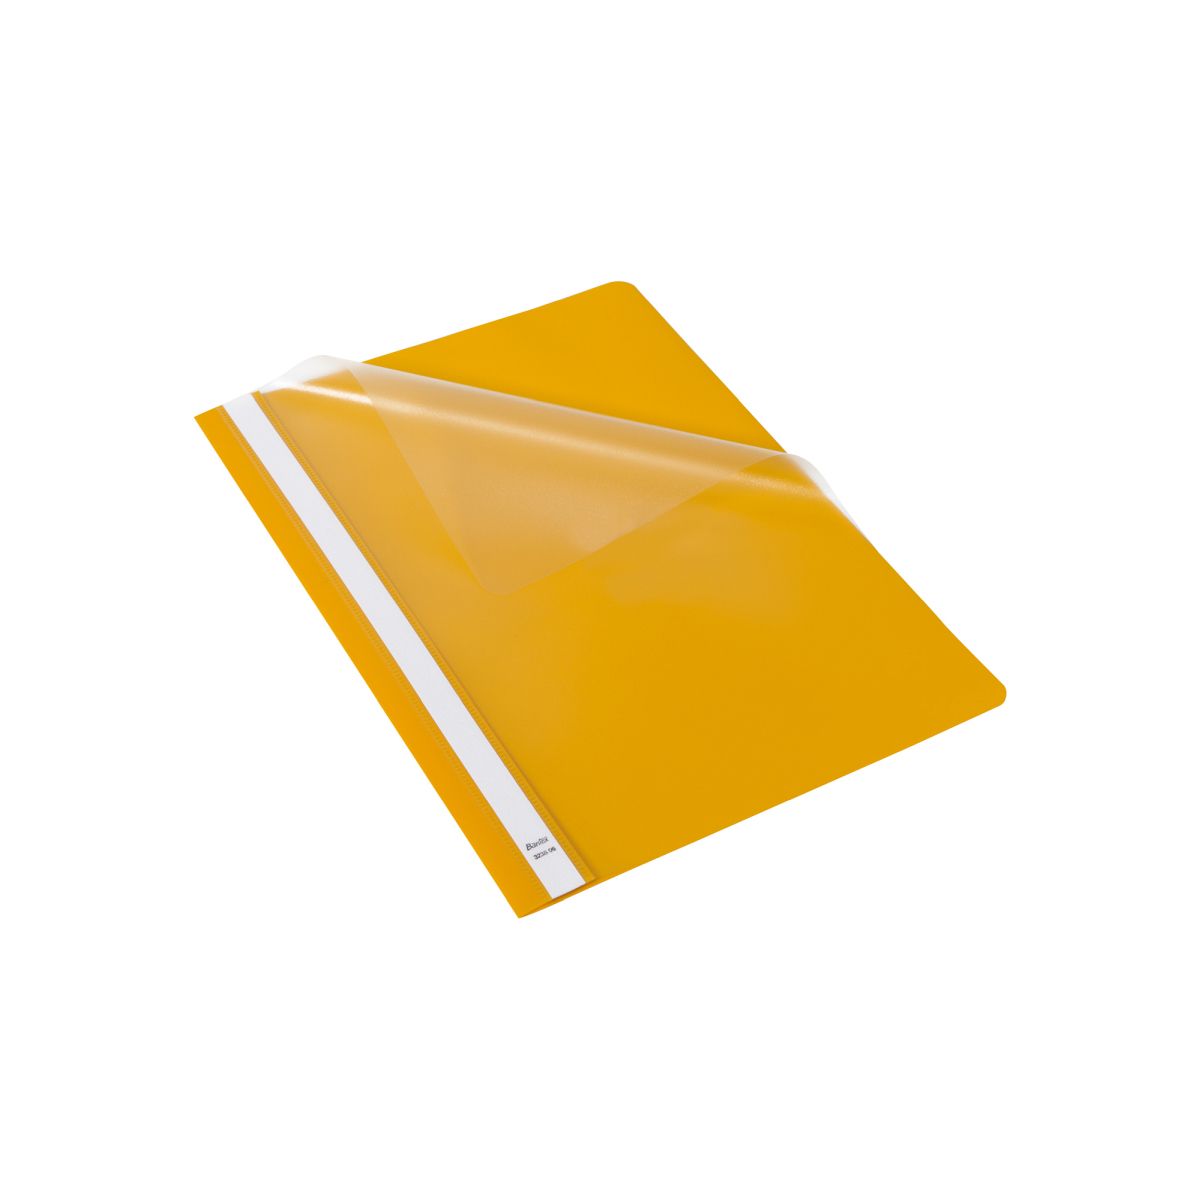 Skoroszyt Standard A4 żółty polipropylen PP Bantex (400076727)